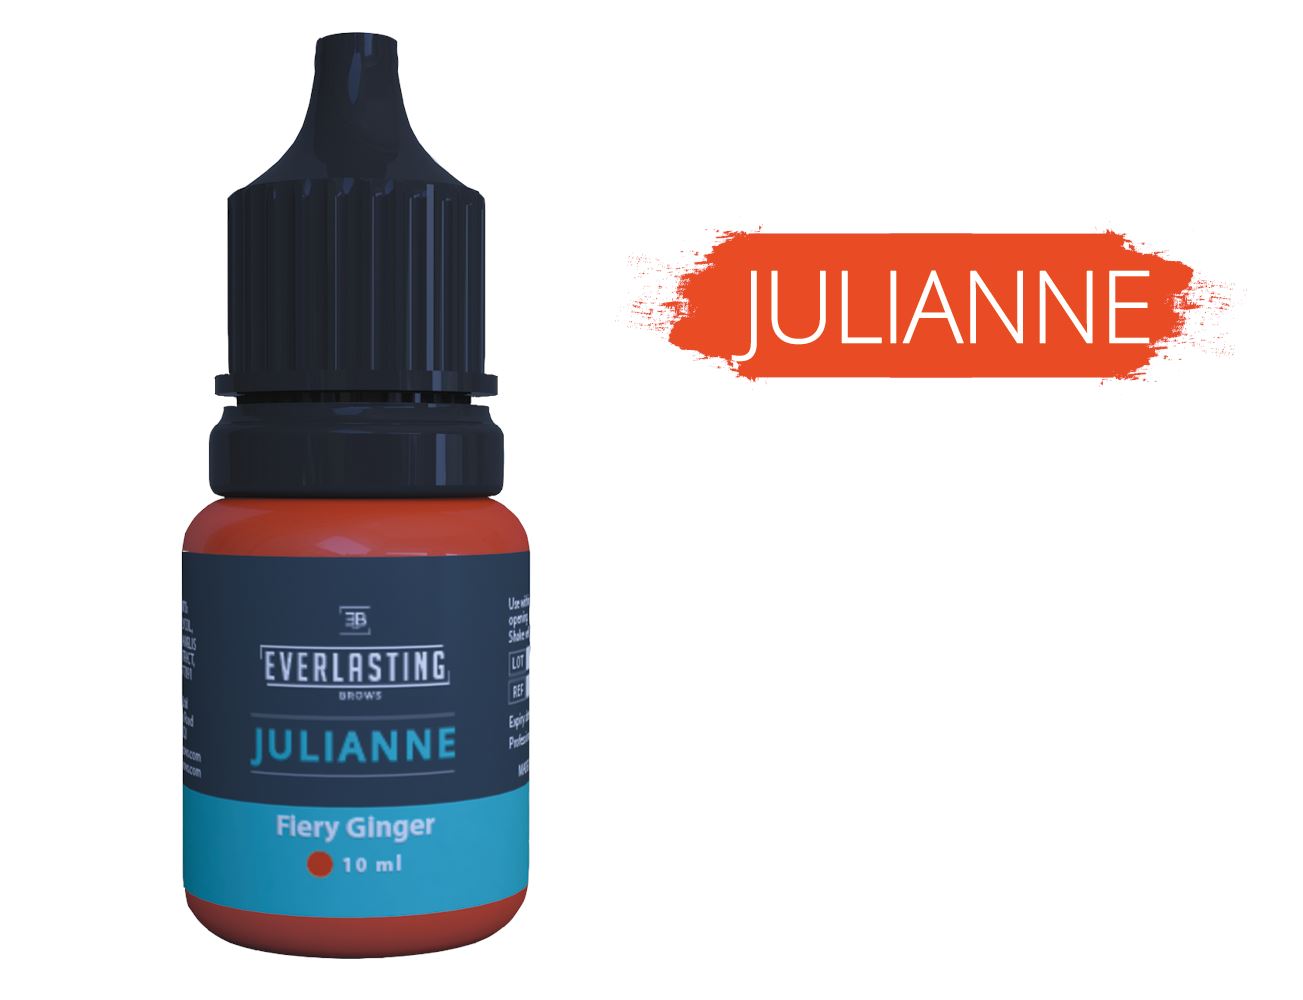 Julianne Corrective Pigment - Lash Kings